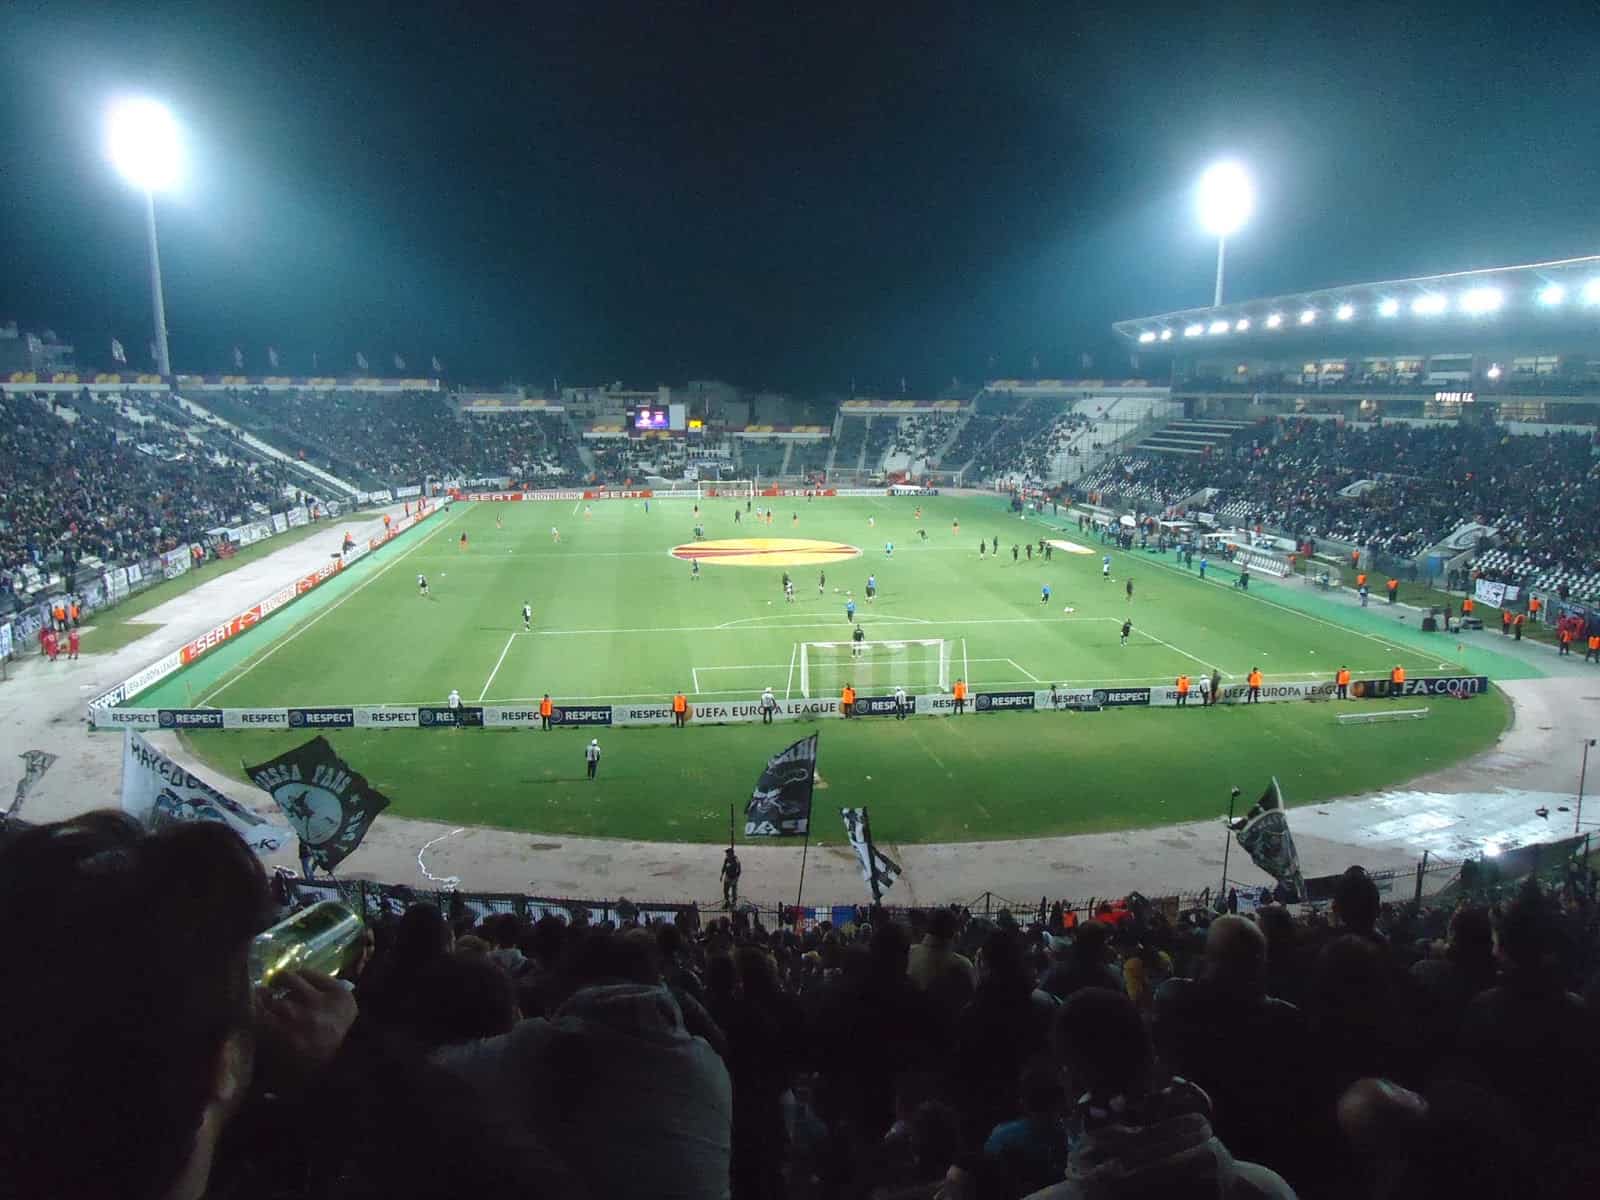 Toumba Stadium in Thessaloniki, Greece